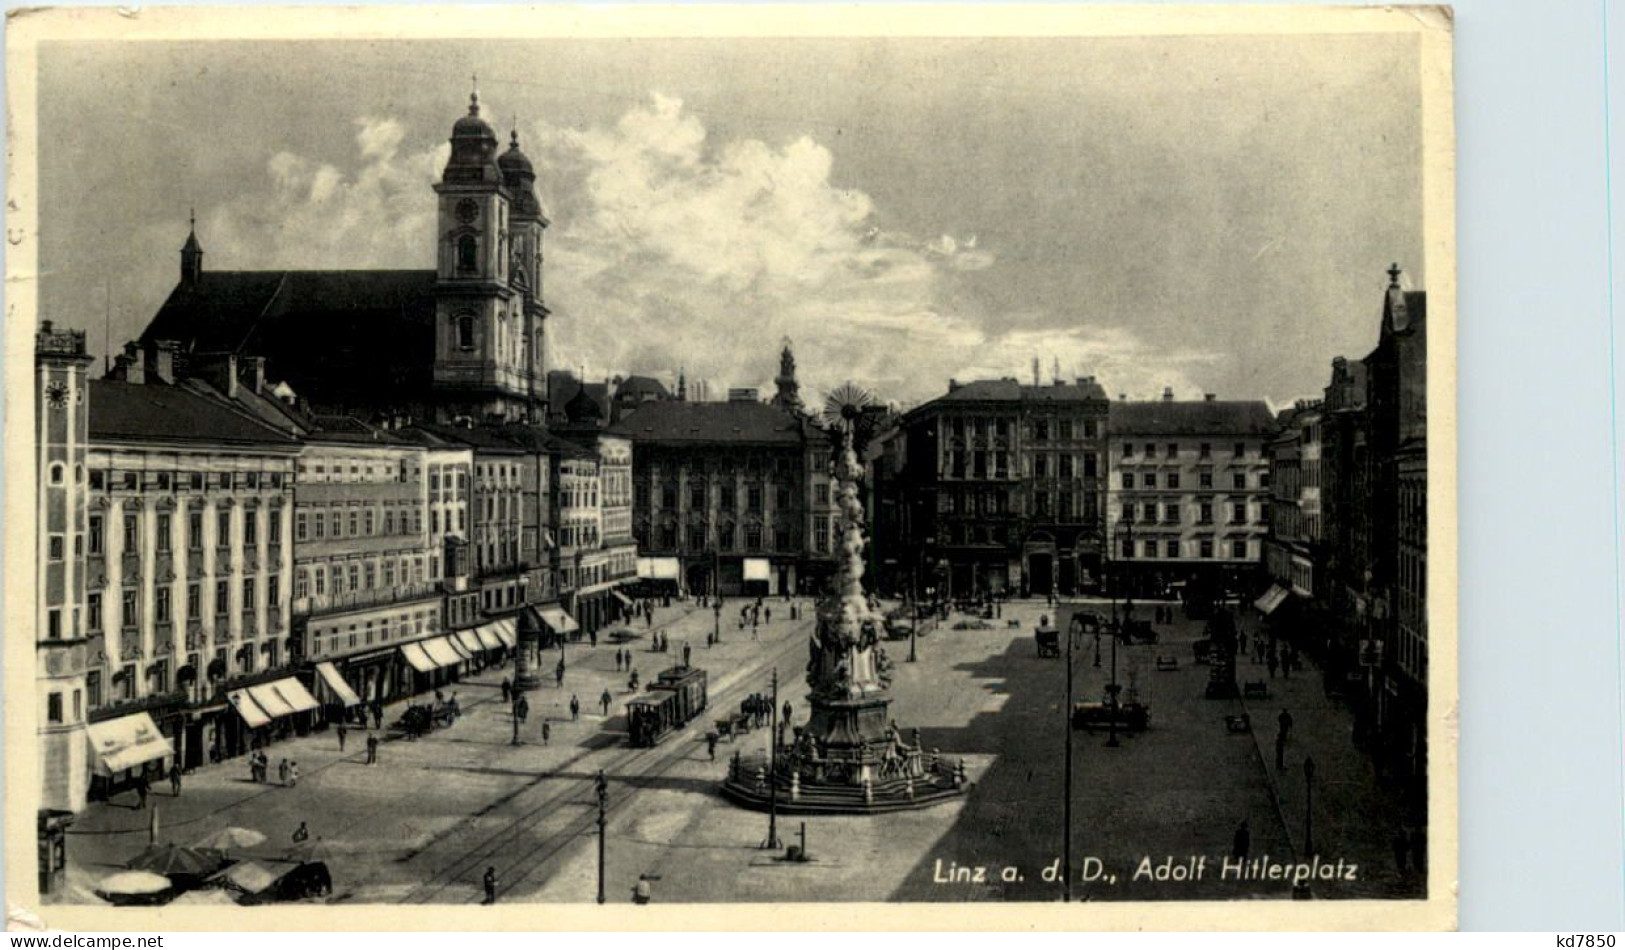 Linz A.d. D., Adolf Hitlerplatz - Linz